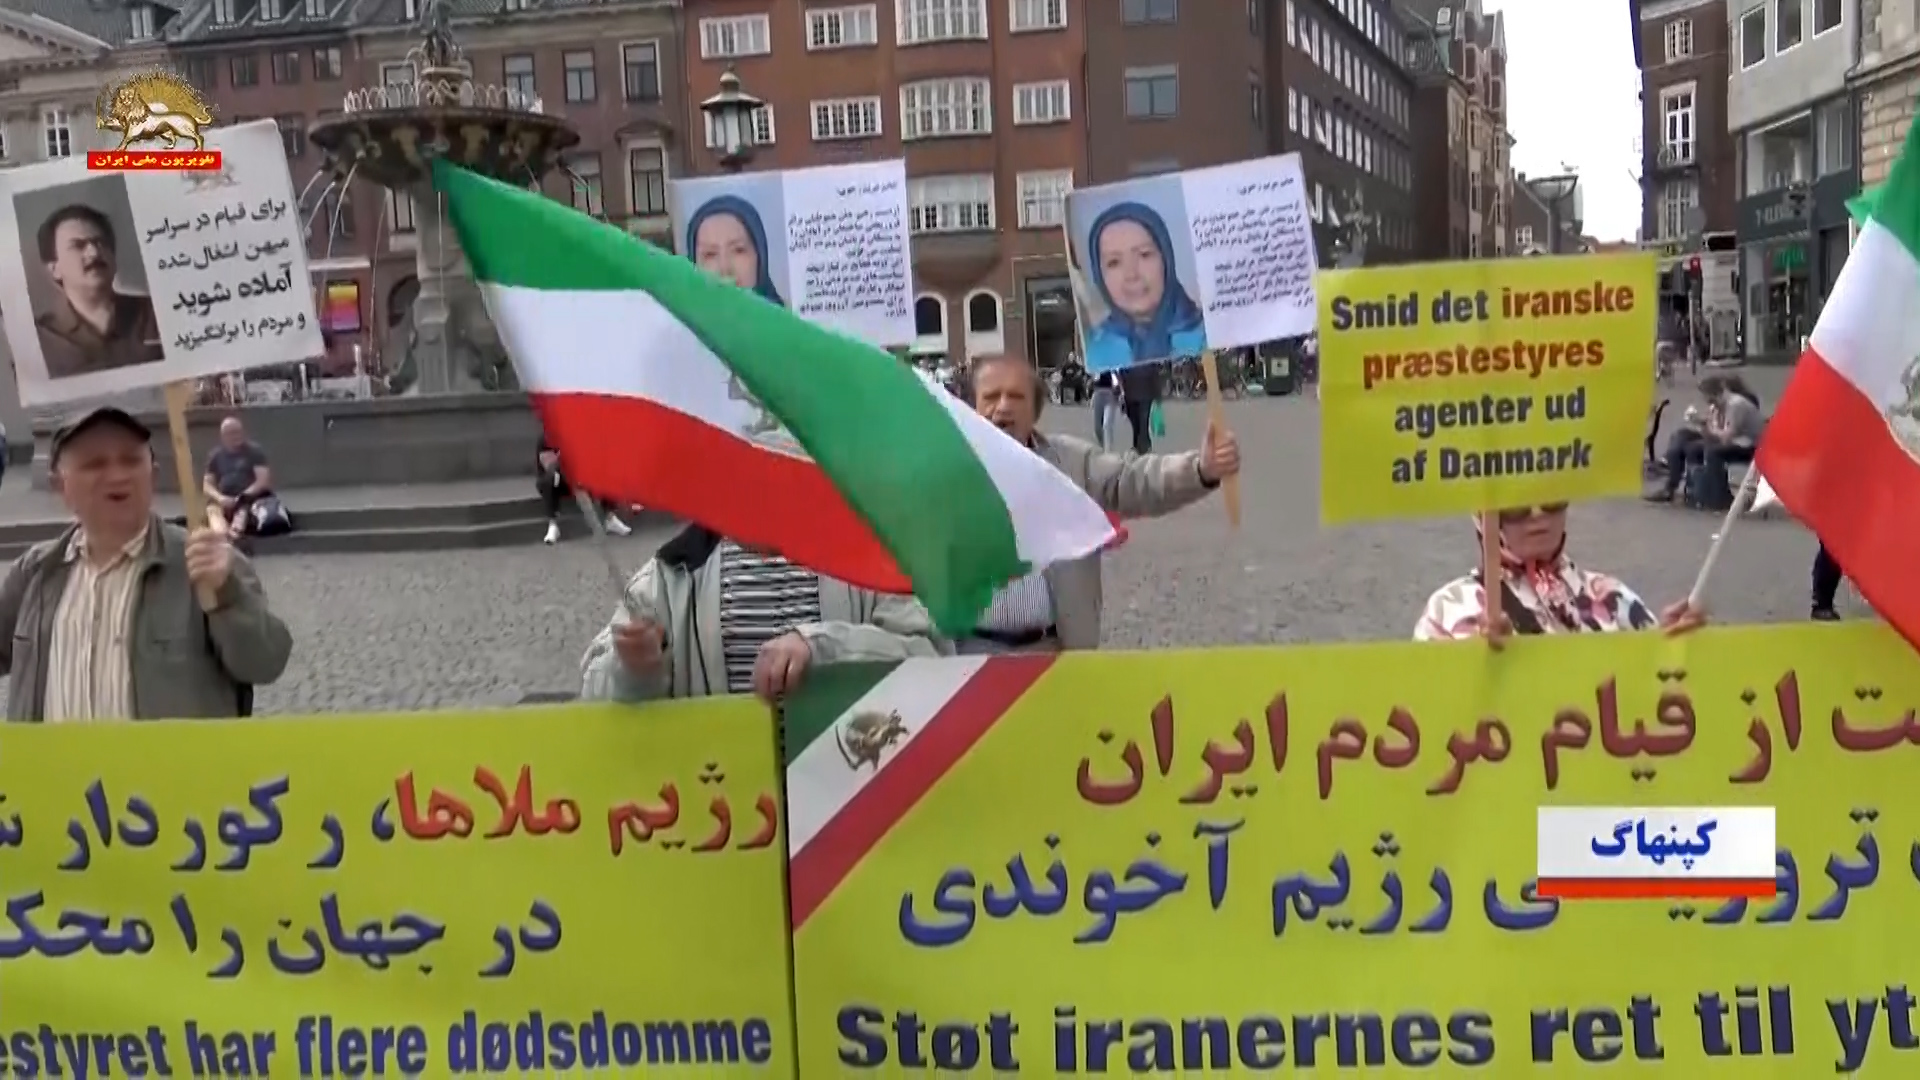 تظاهرات یاران شورشگر در ژنو ـ کپنهاگ و ونکوورـ تأکید بر مرزبندی نه شاه و نه شیخ3